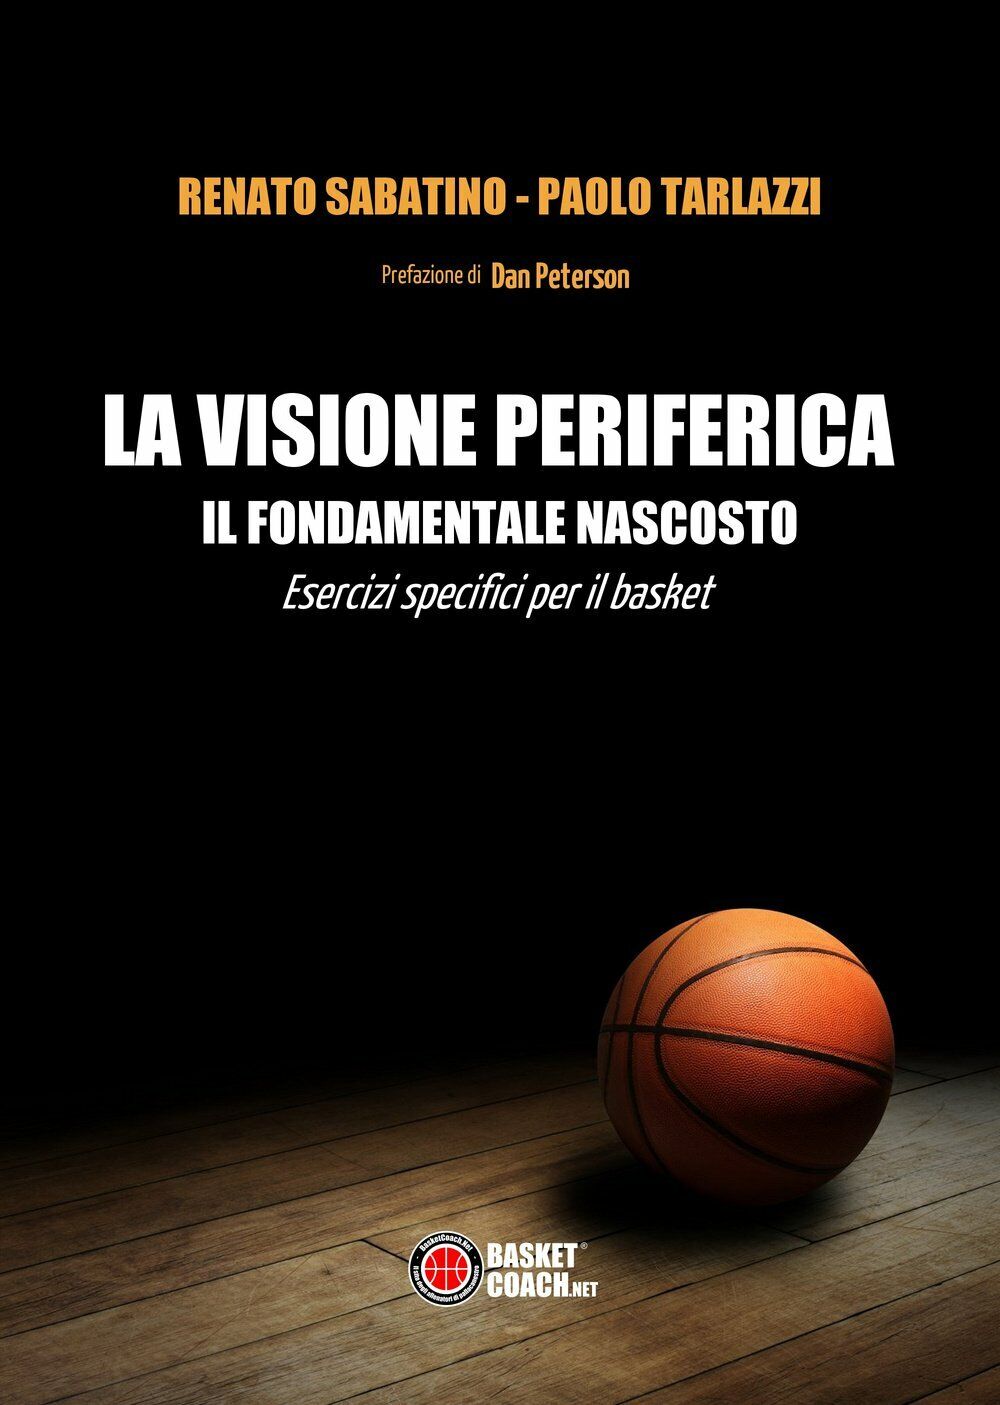 La visione periferica - Renato Sabatino - BasketCoach.Net - 2015